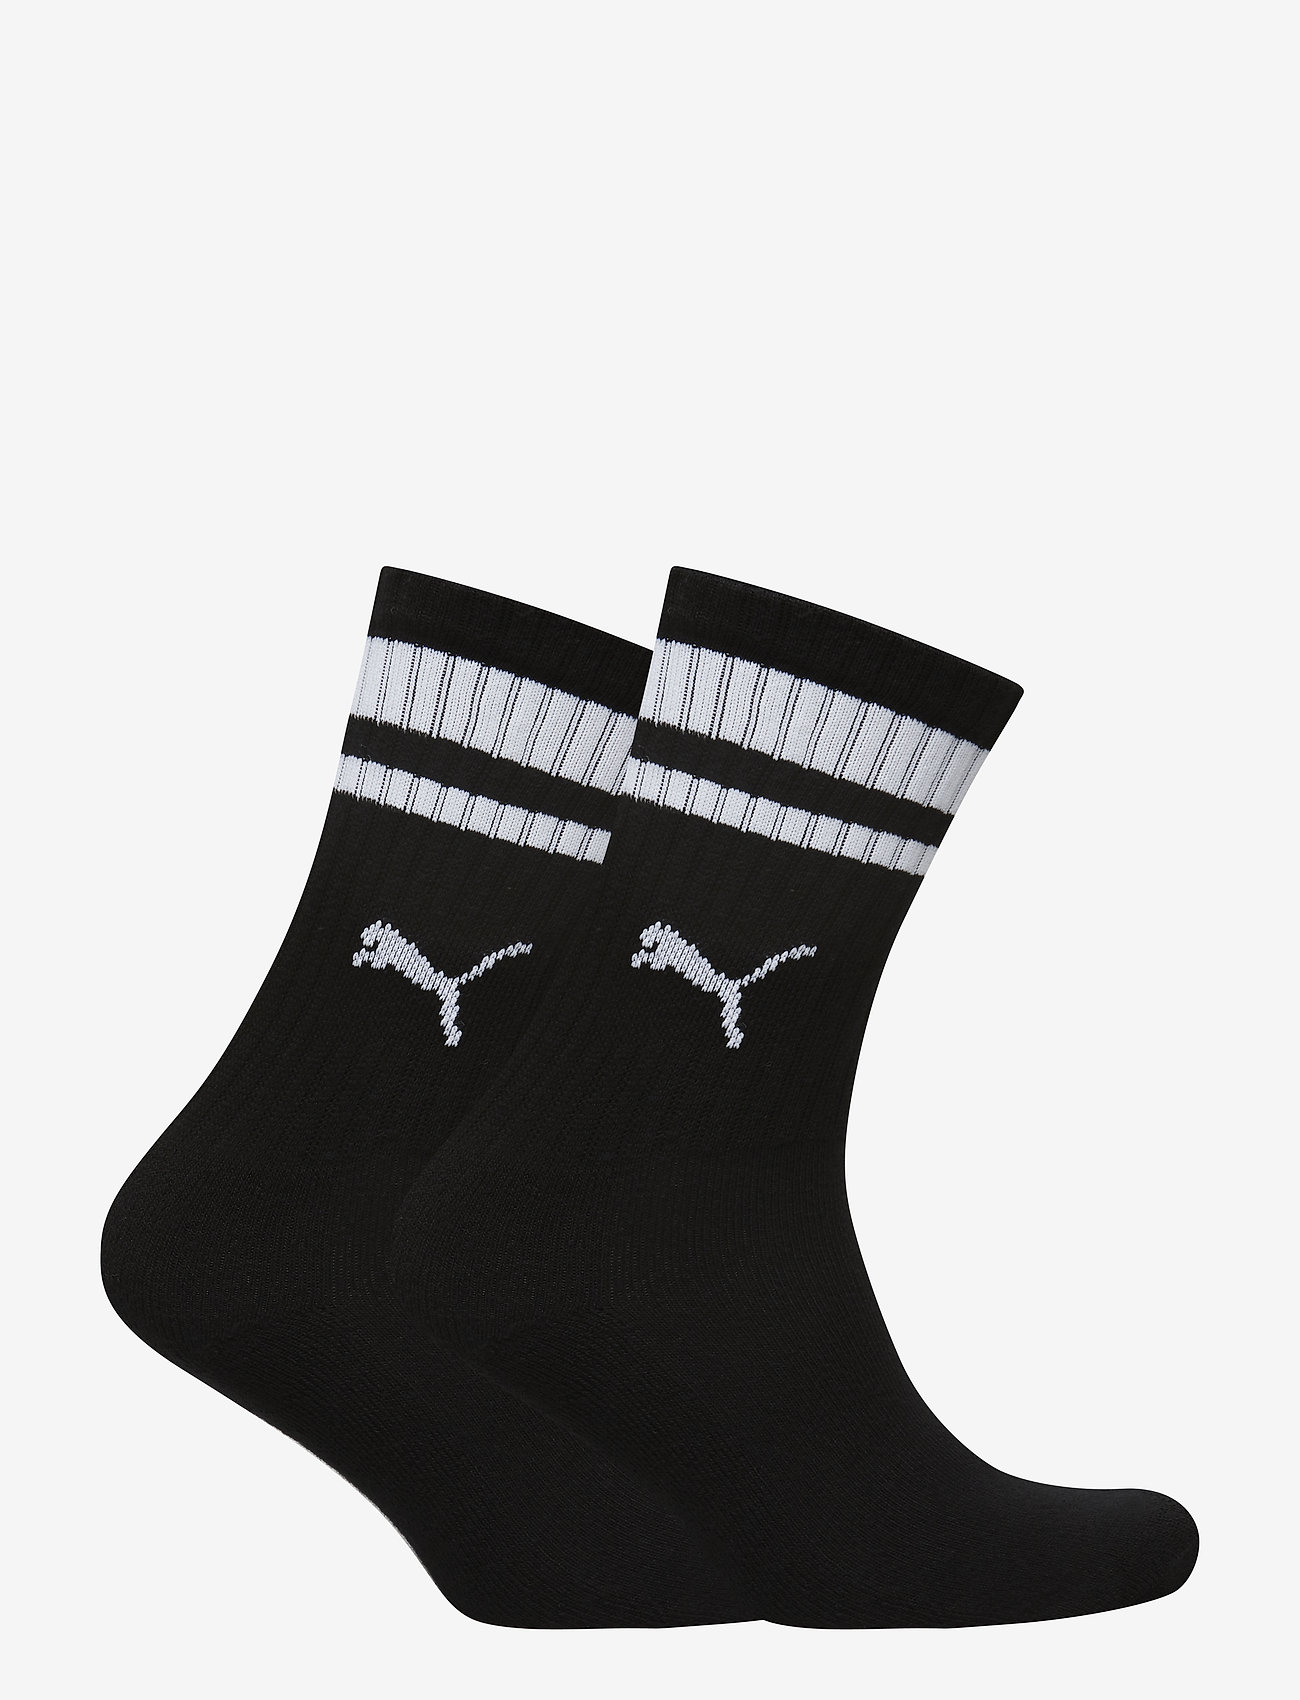 puma heritage socks